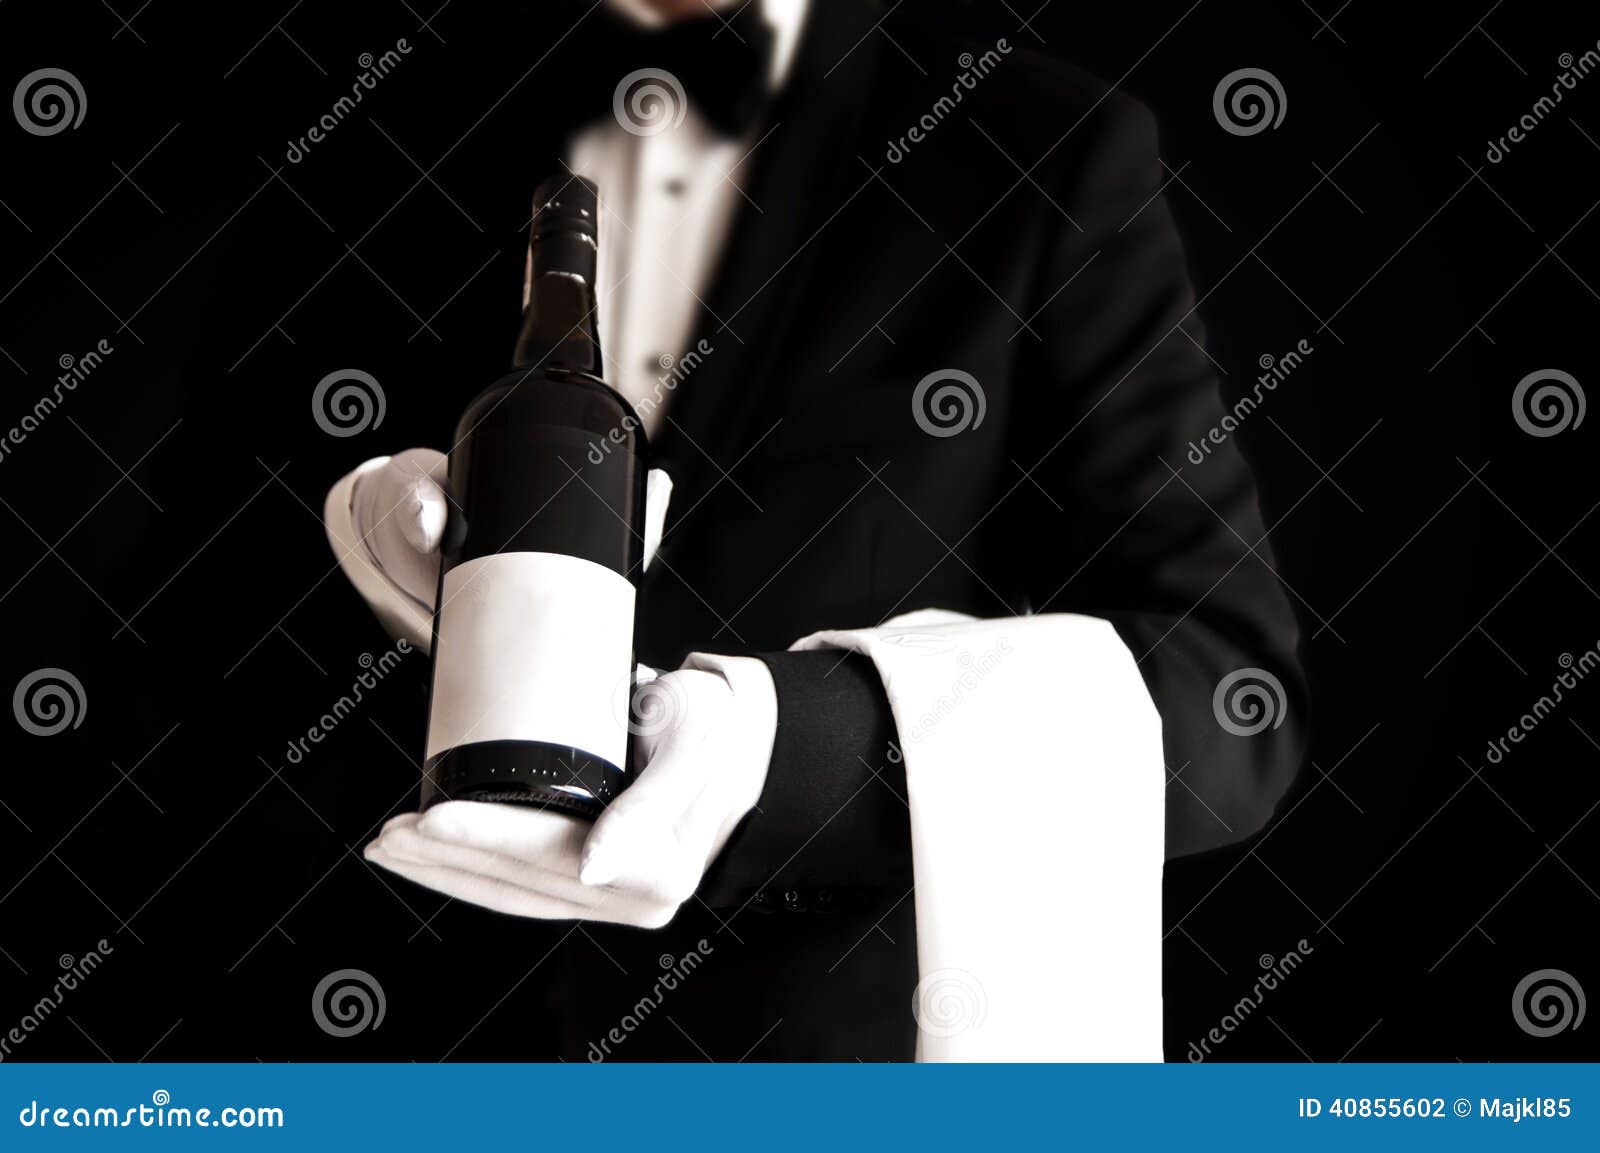 waiter in tuxedo holding a bottle of red wine